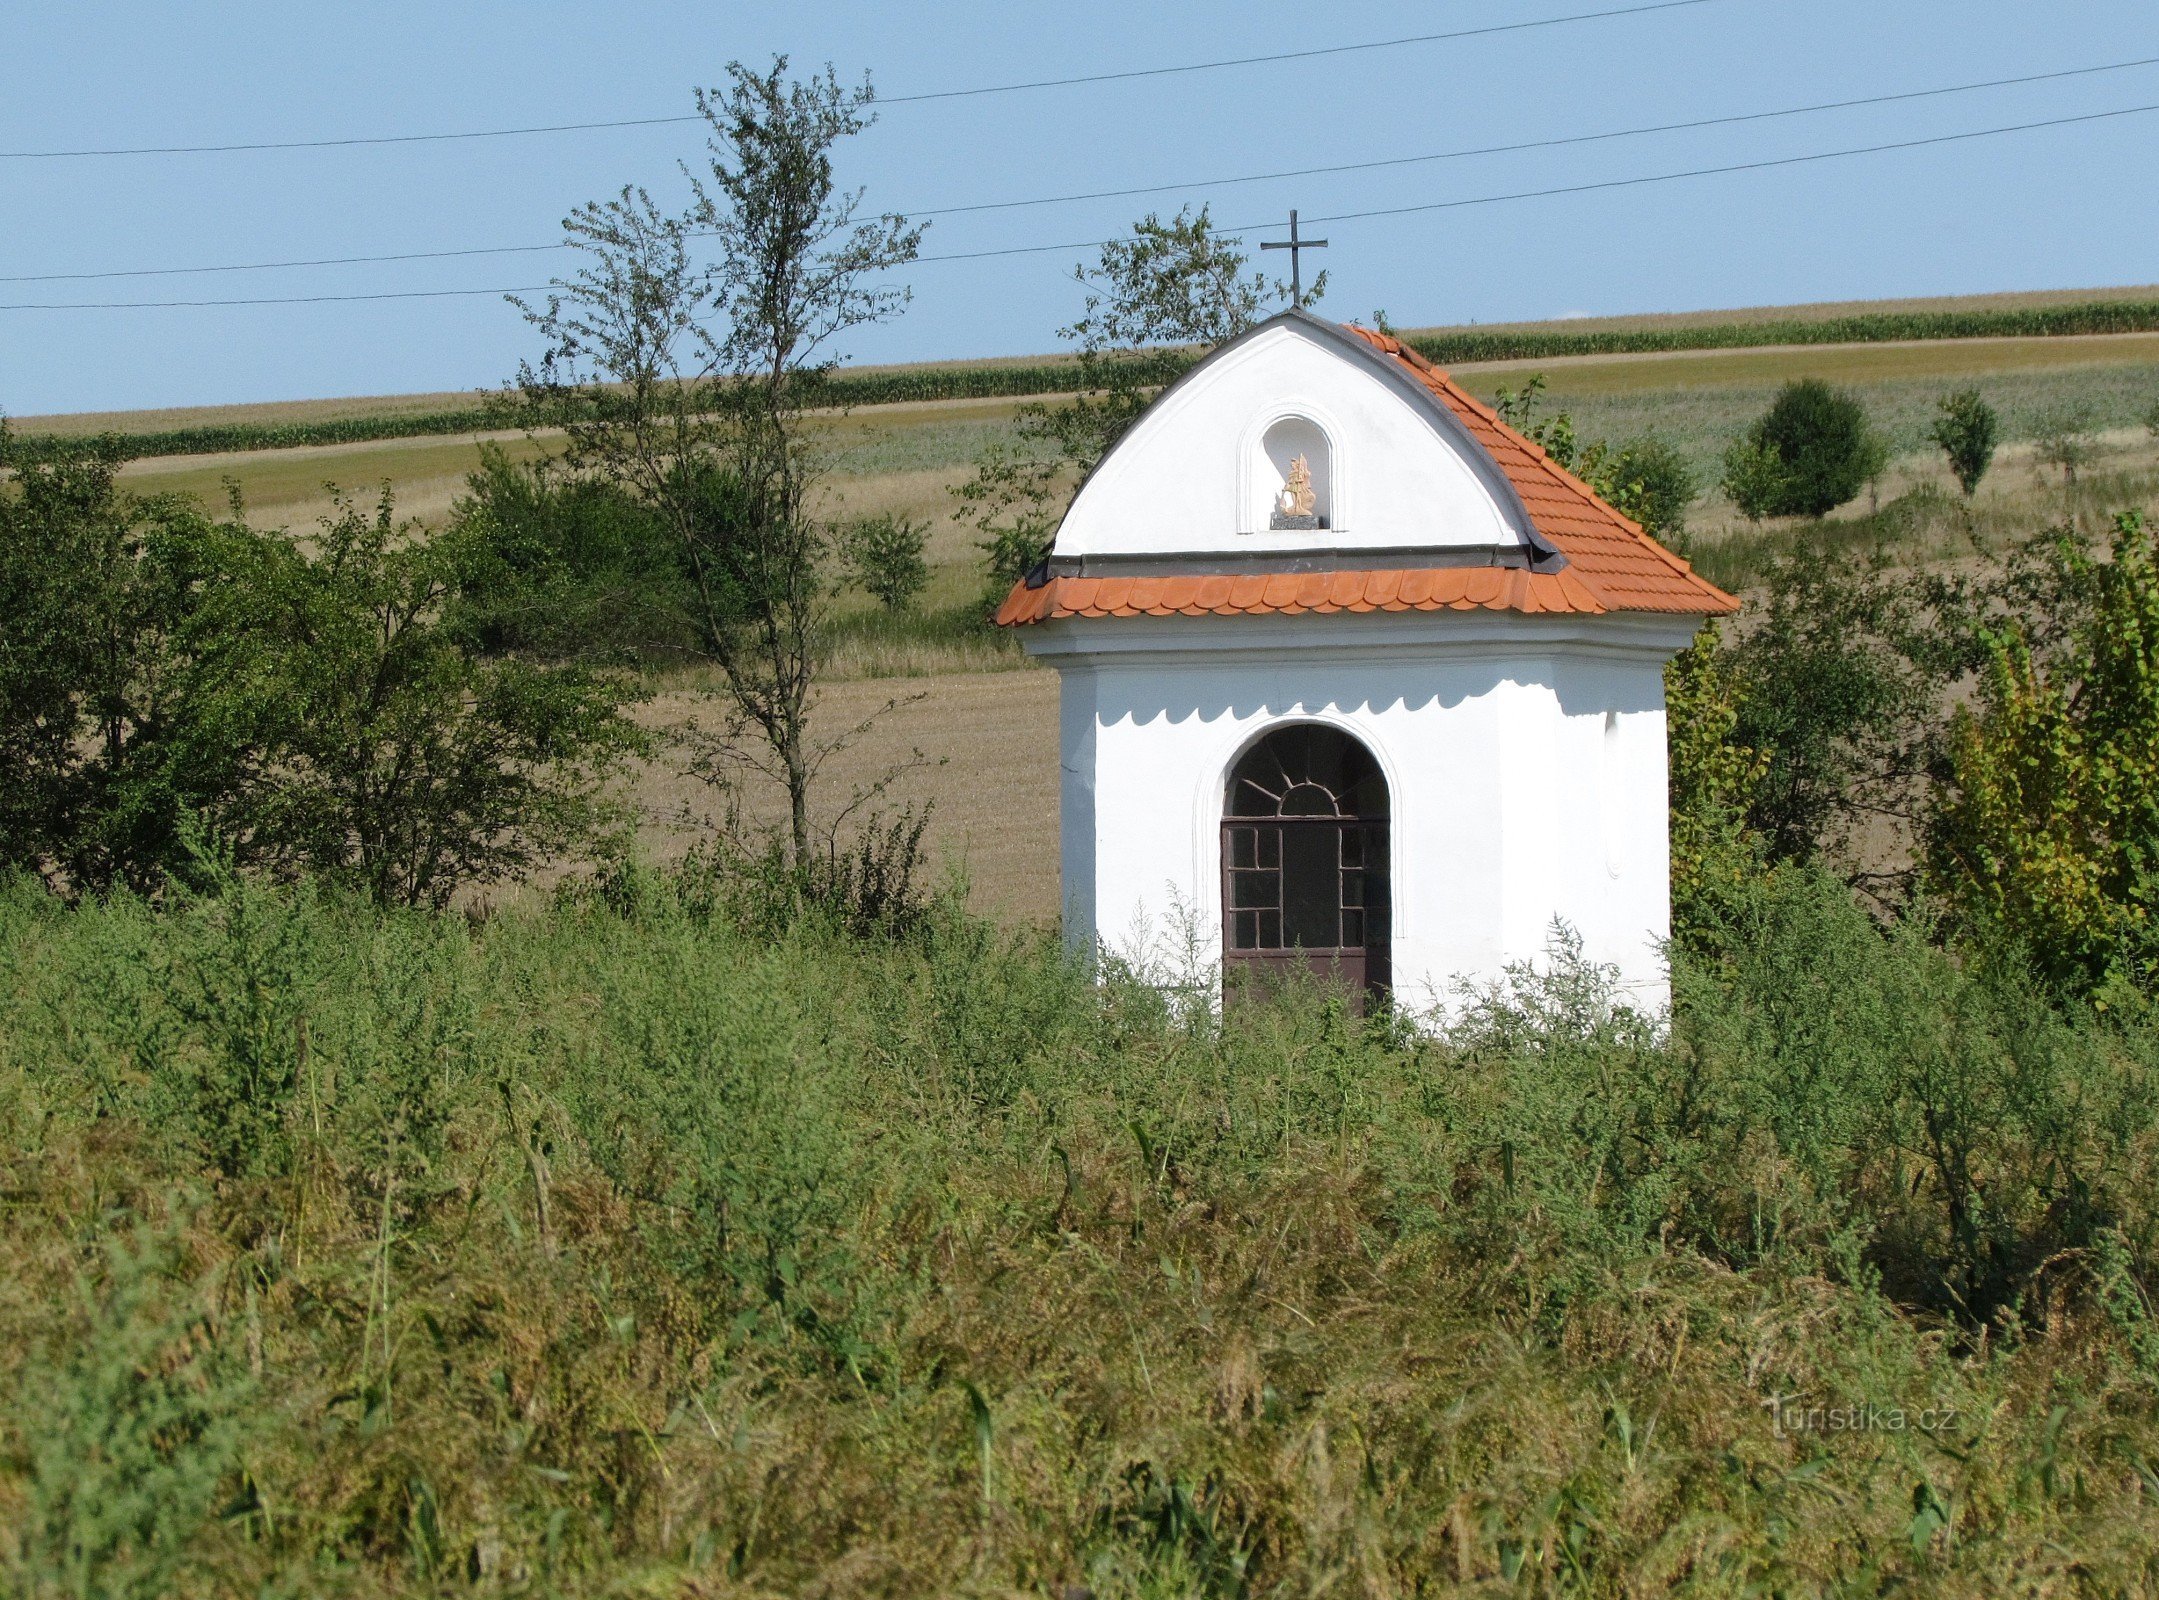 Racková - kapel van St. Florian